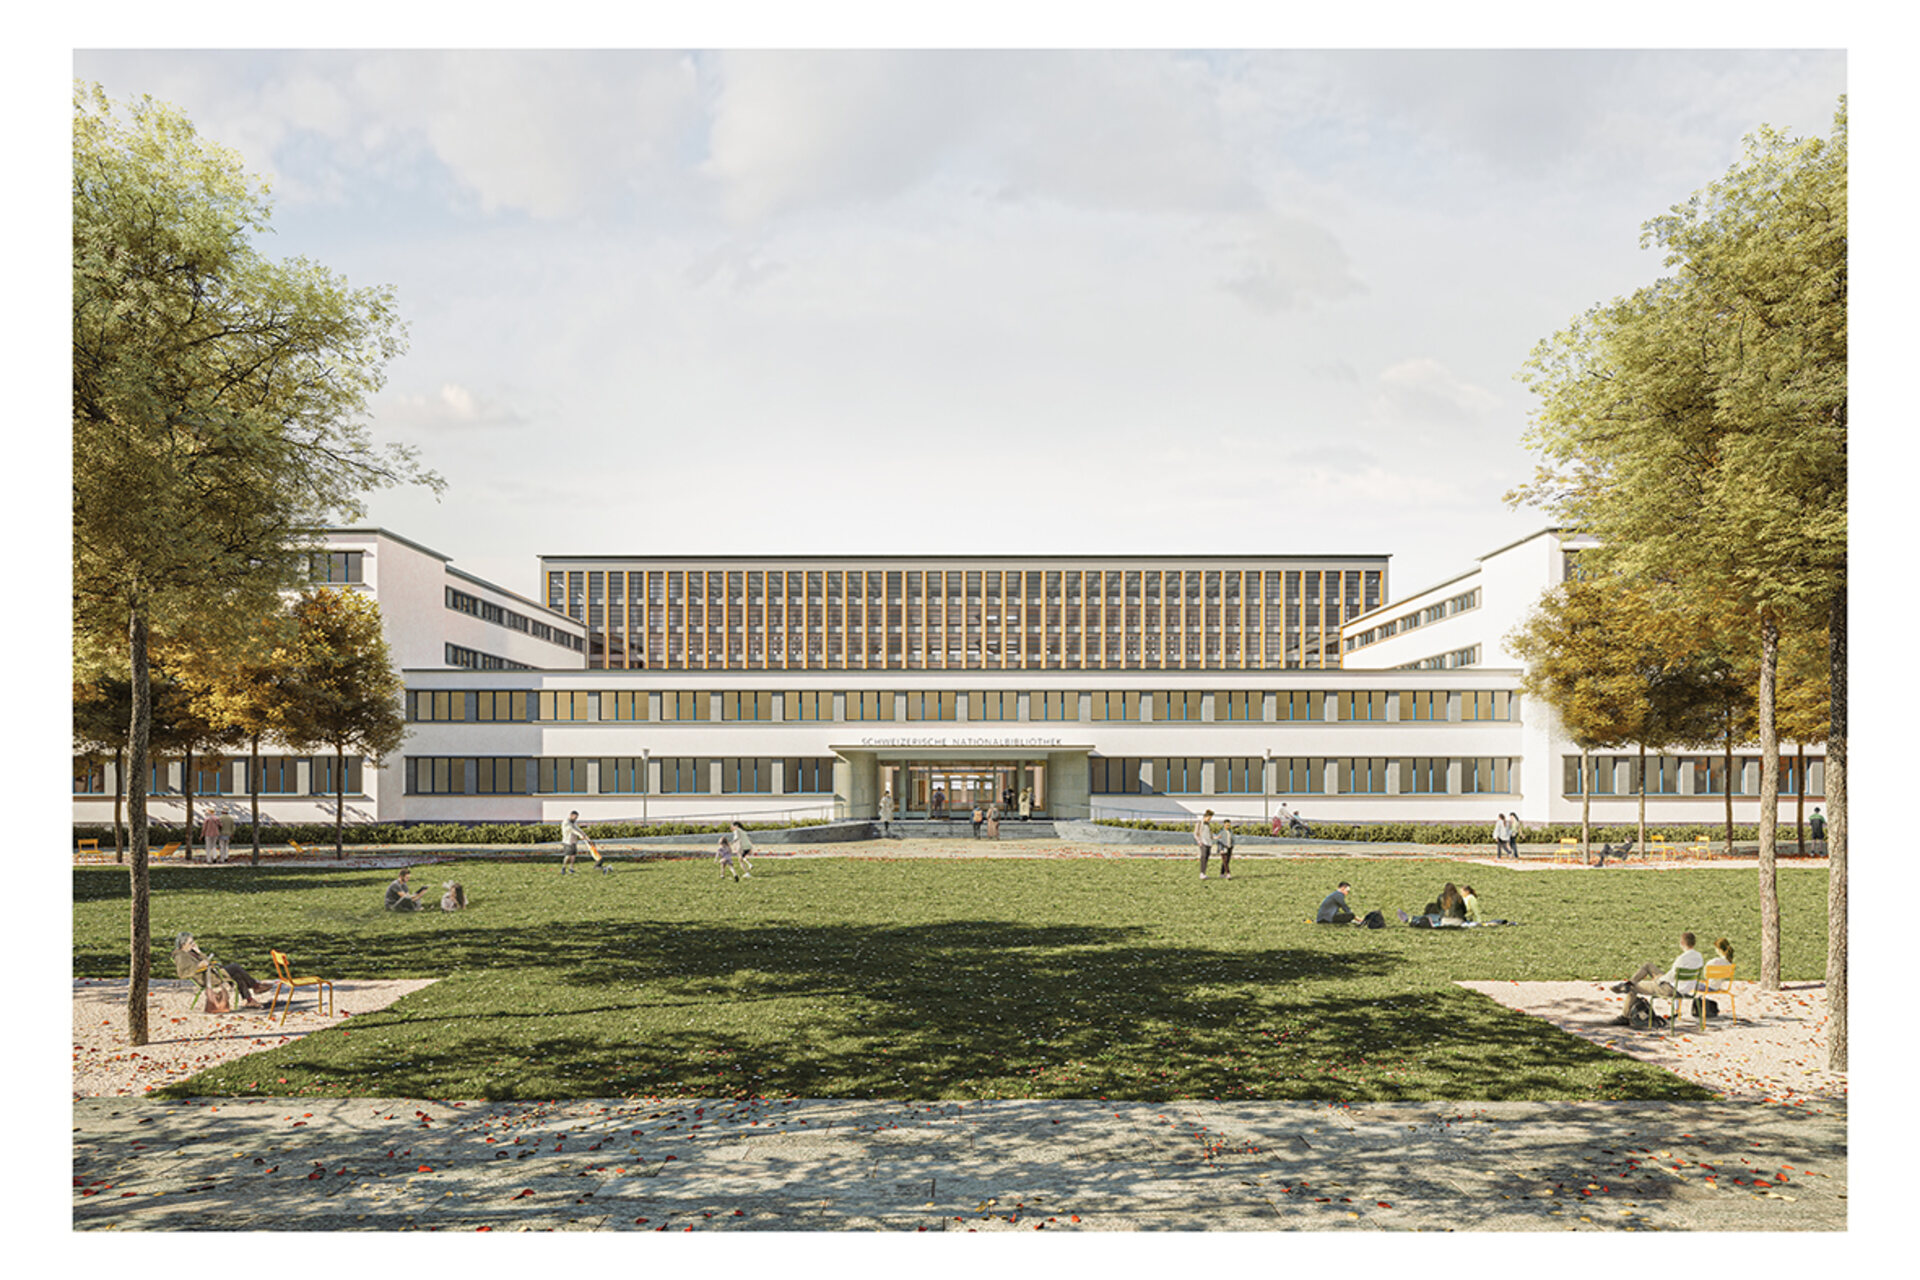 Swiss National Library: et team af generelle planlæggere, ledet af Christ & Gantenbein arkitektfirma i Basel, har vundet konkurrencen om totalrenovering og ombygning af NL